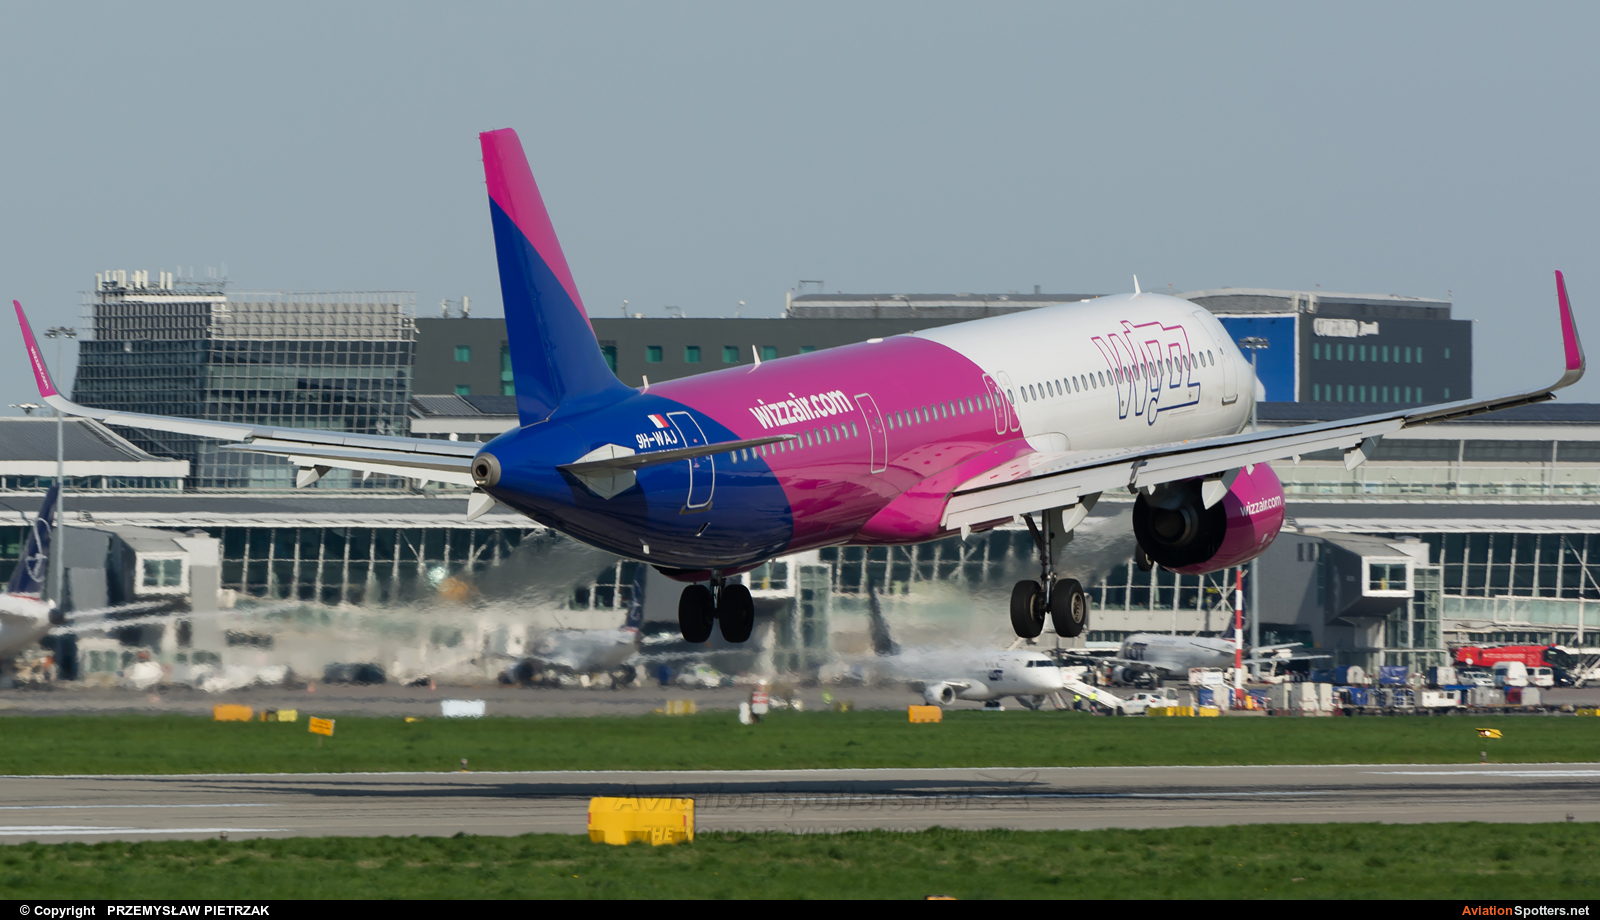 Wizz Air  -  A321  (9H-WAJ) By PRZEMYSŁAW PIETRZAK (PEPE74)